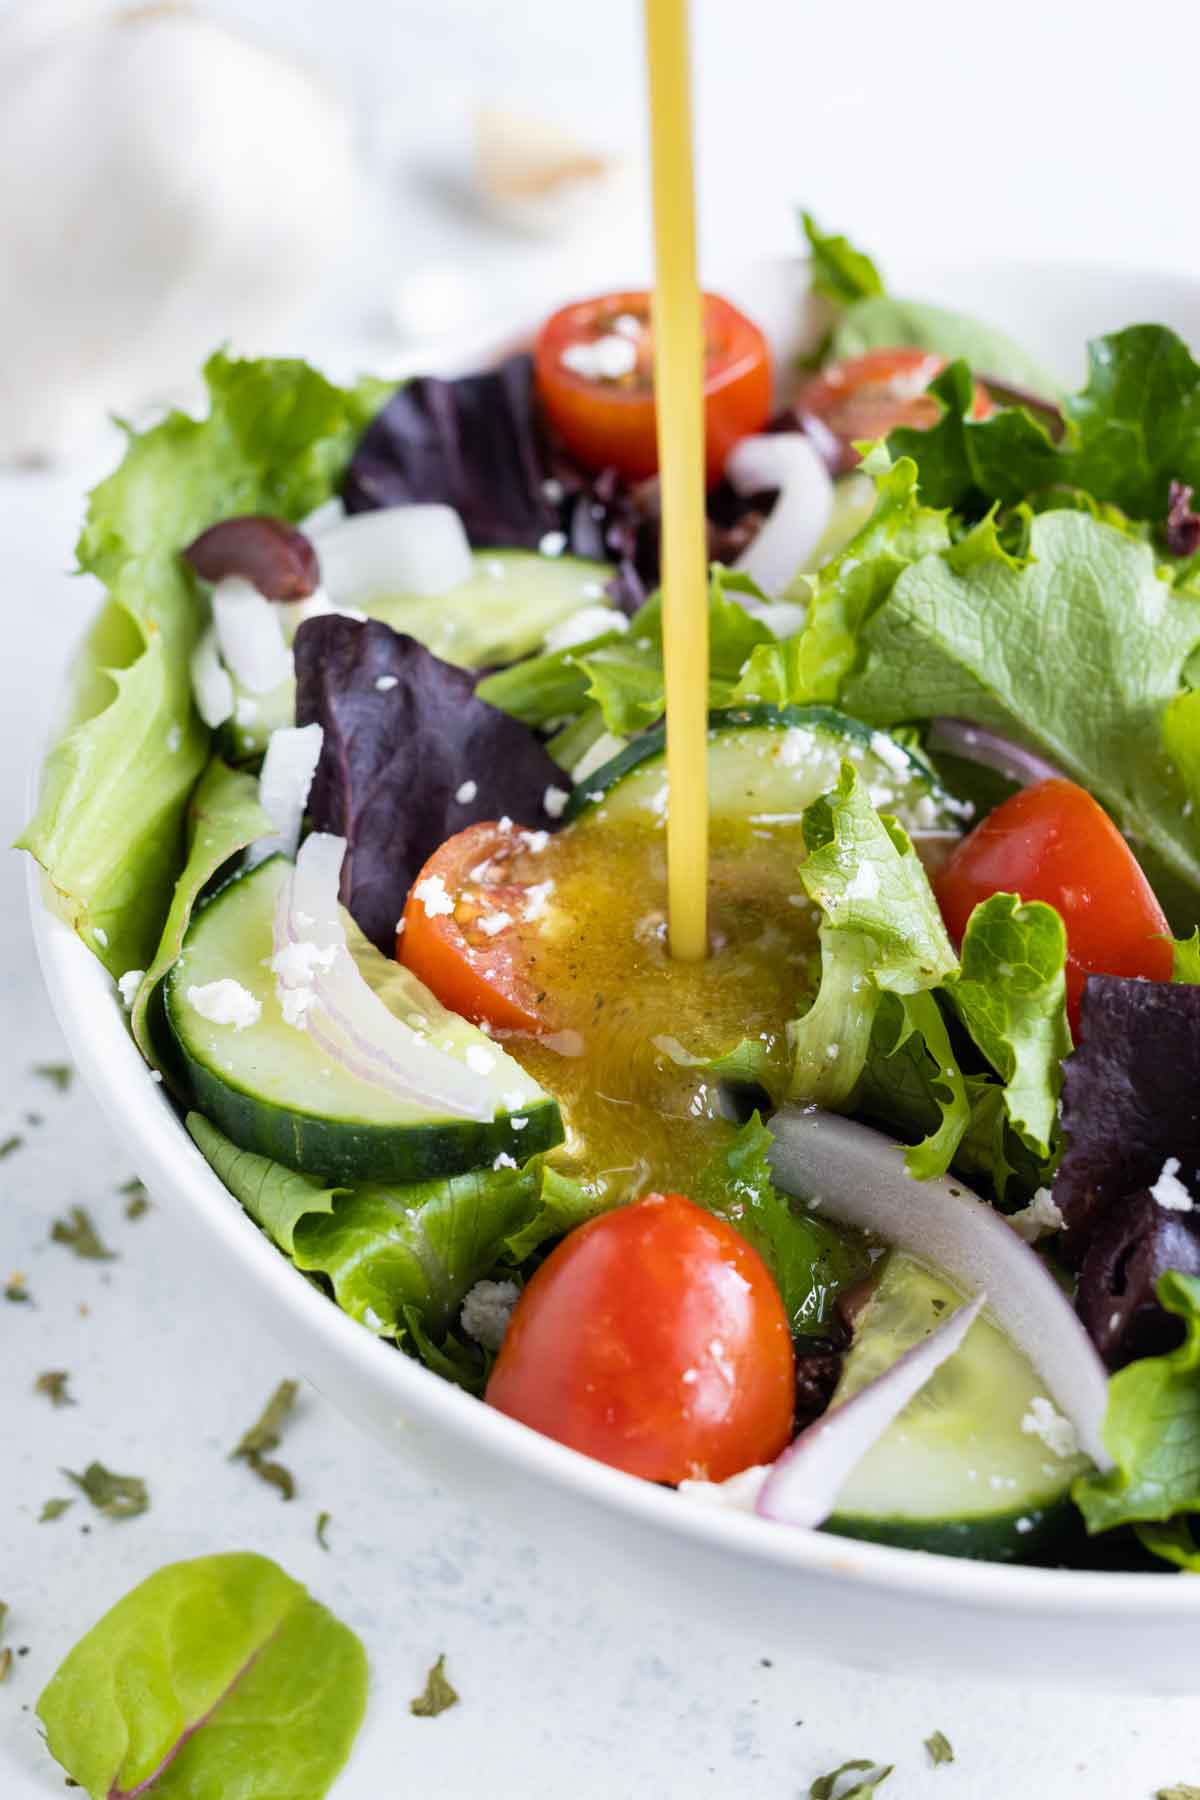 Greek salad dressing is poured over a greek salad.